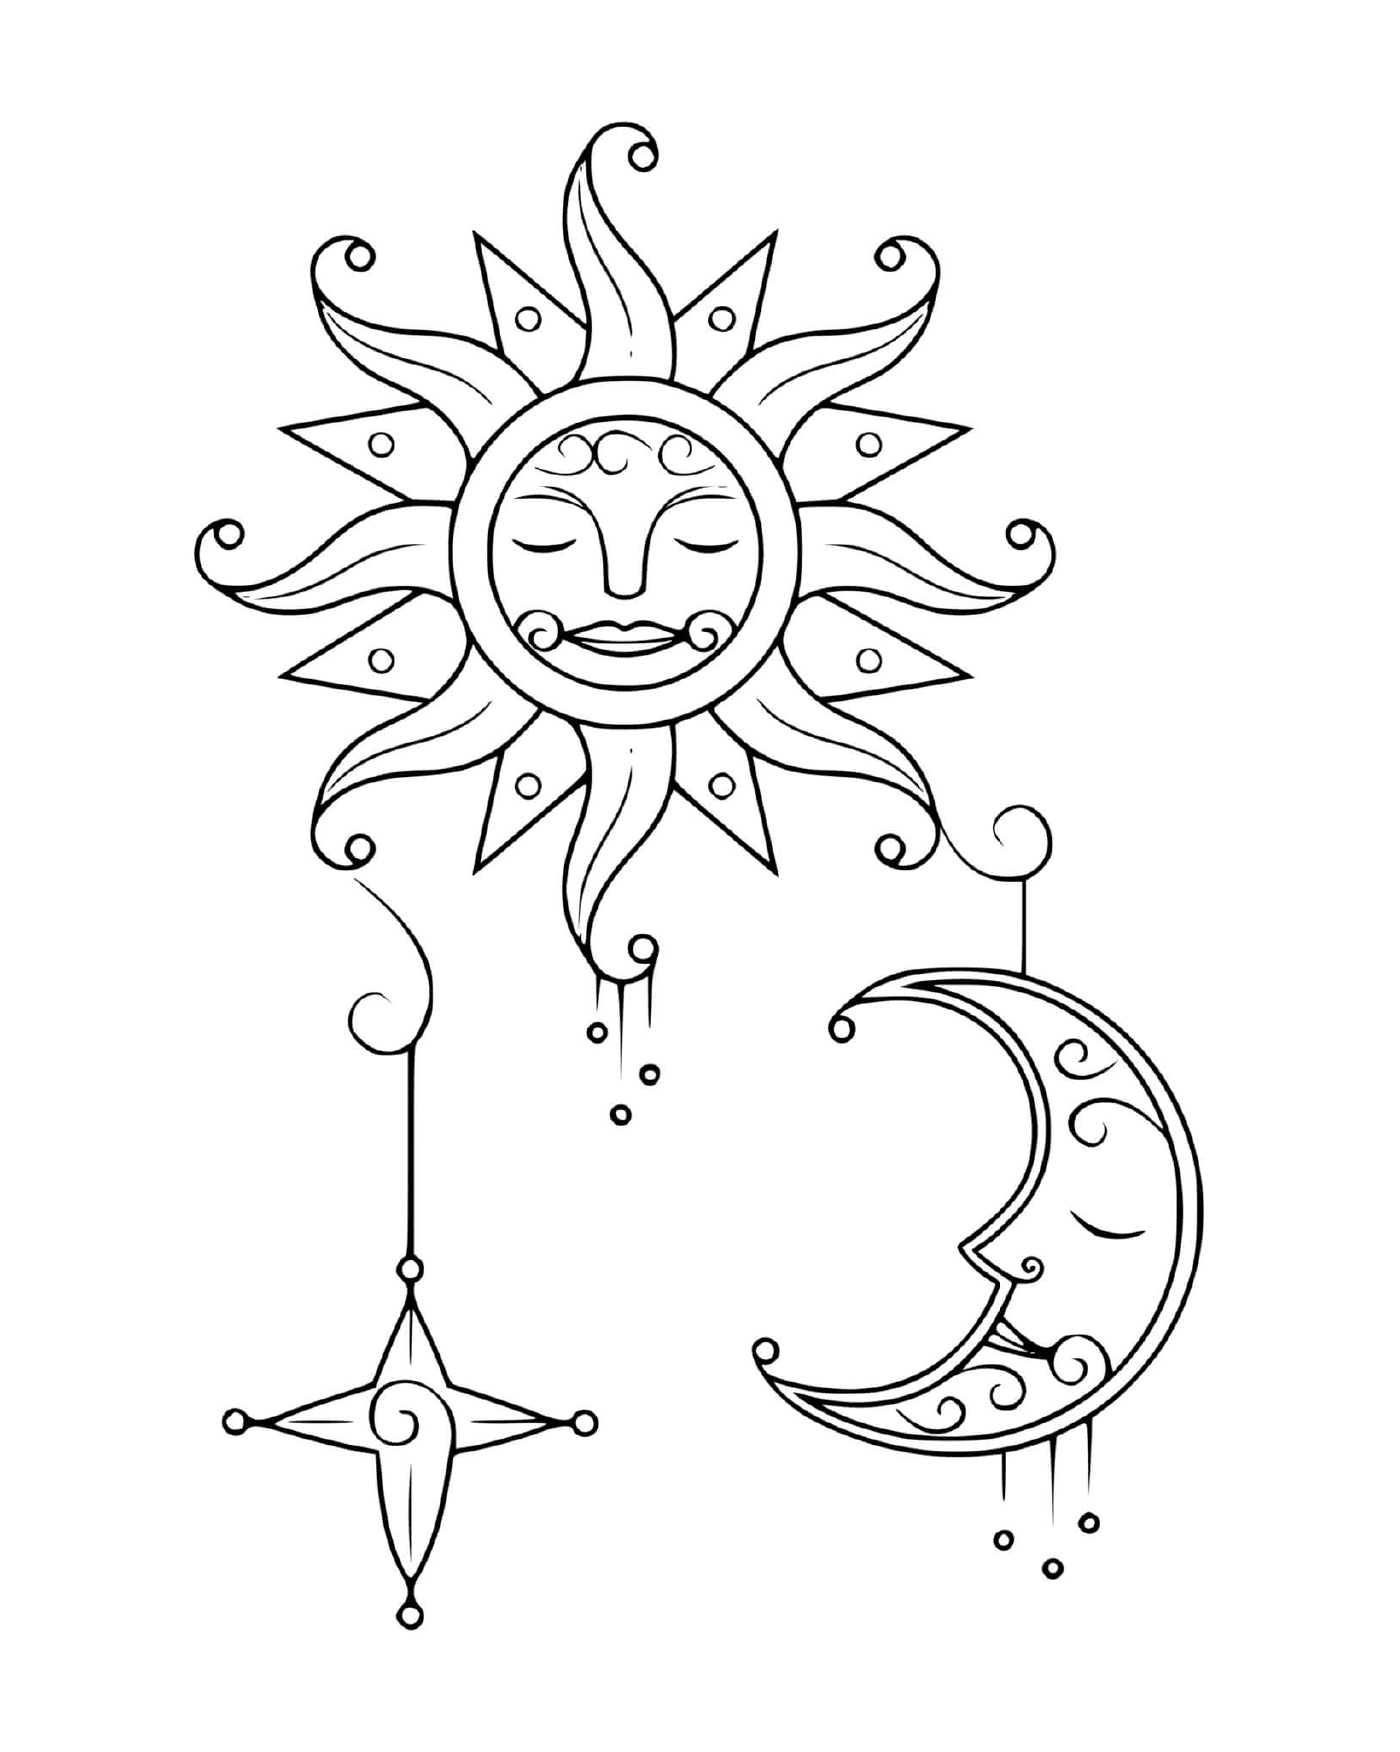  Sol y luna 